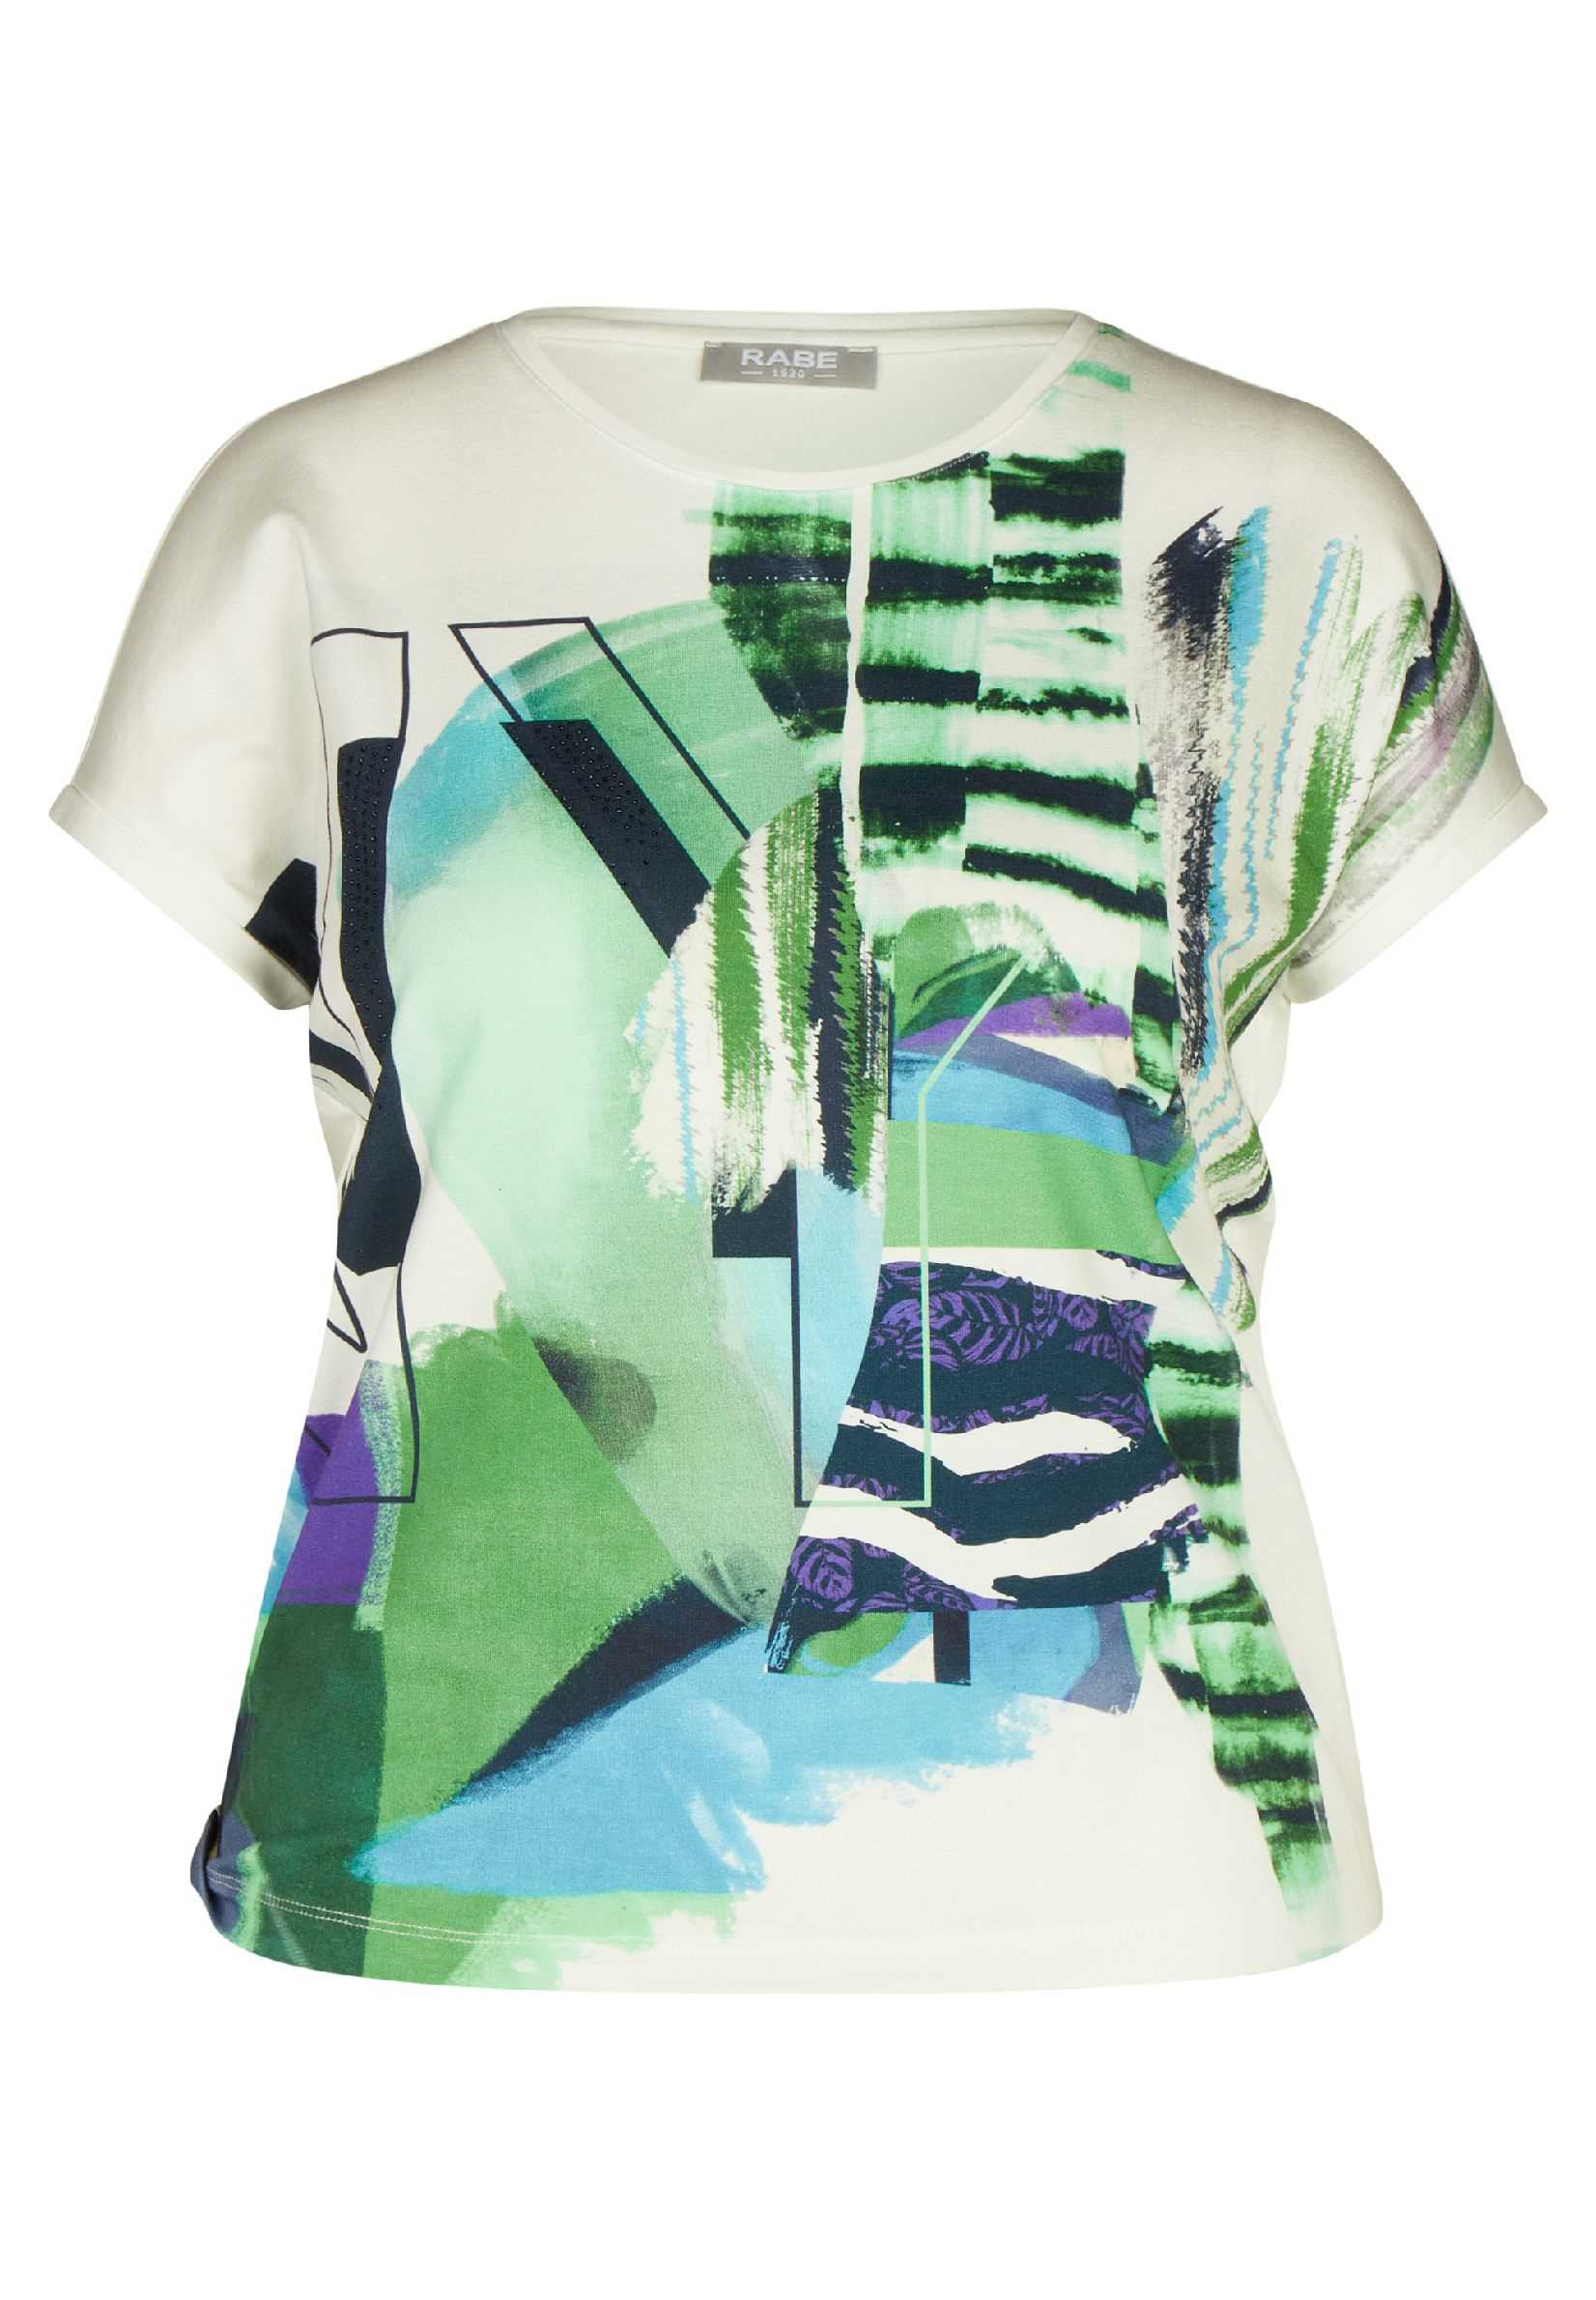 T-Shirt Rabe E Natur | Daniëlle Exclusief Mariëlle Print / Mode Groen